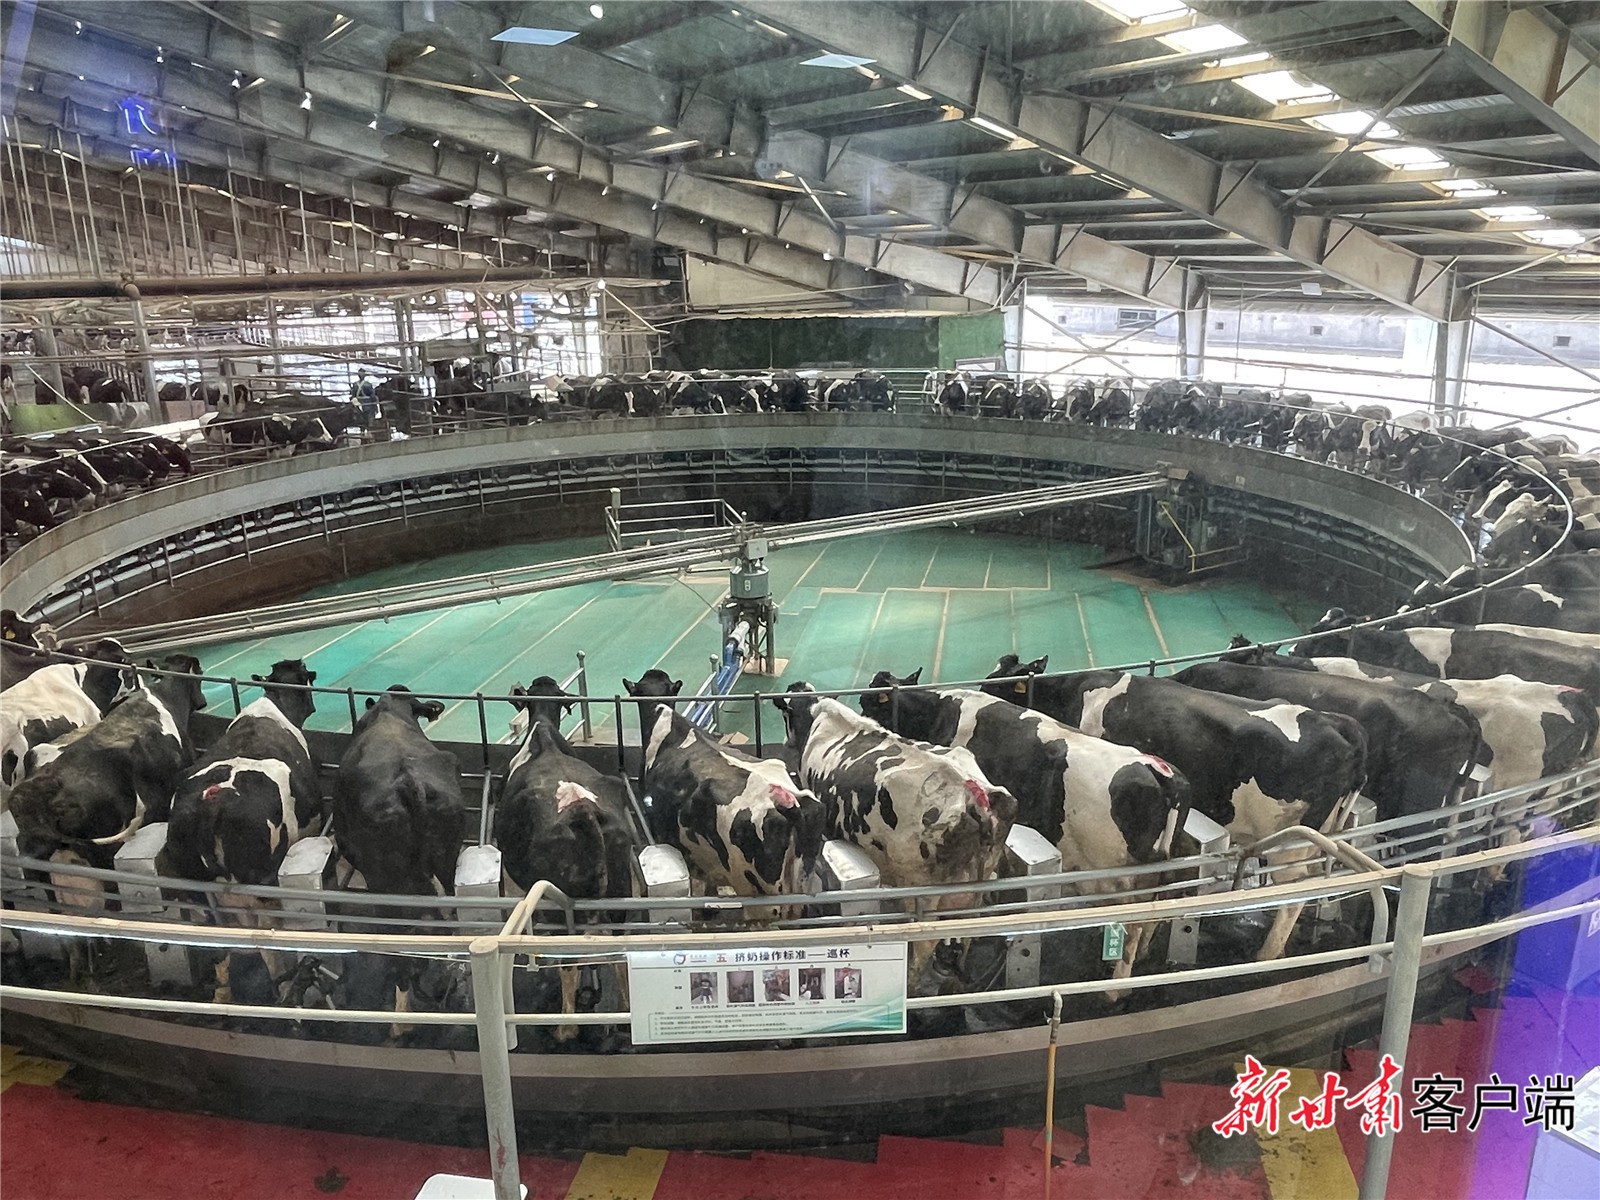 前进牧业科技有限责任公司的自动挤奶装置正在为奶牛挤奶 新甘肃·甘肃日报记者 张燕茹 摄